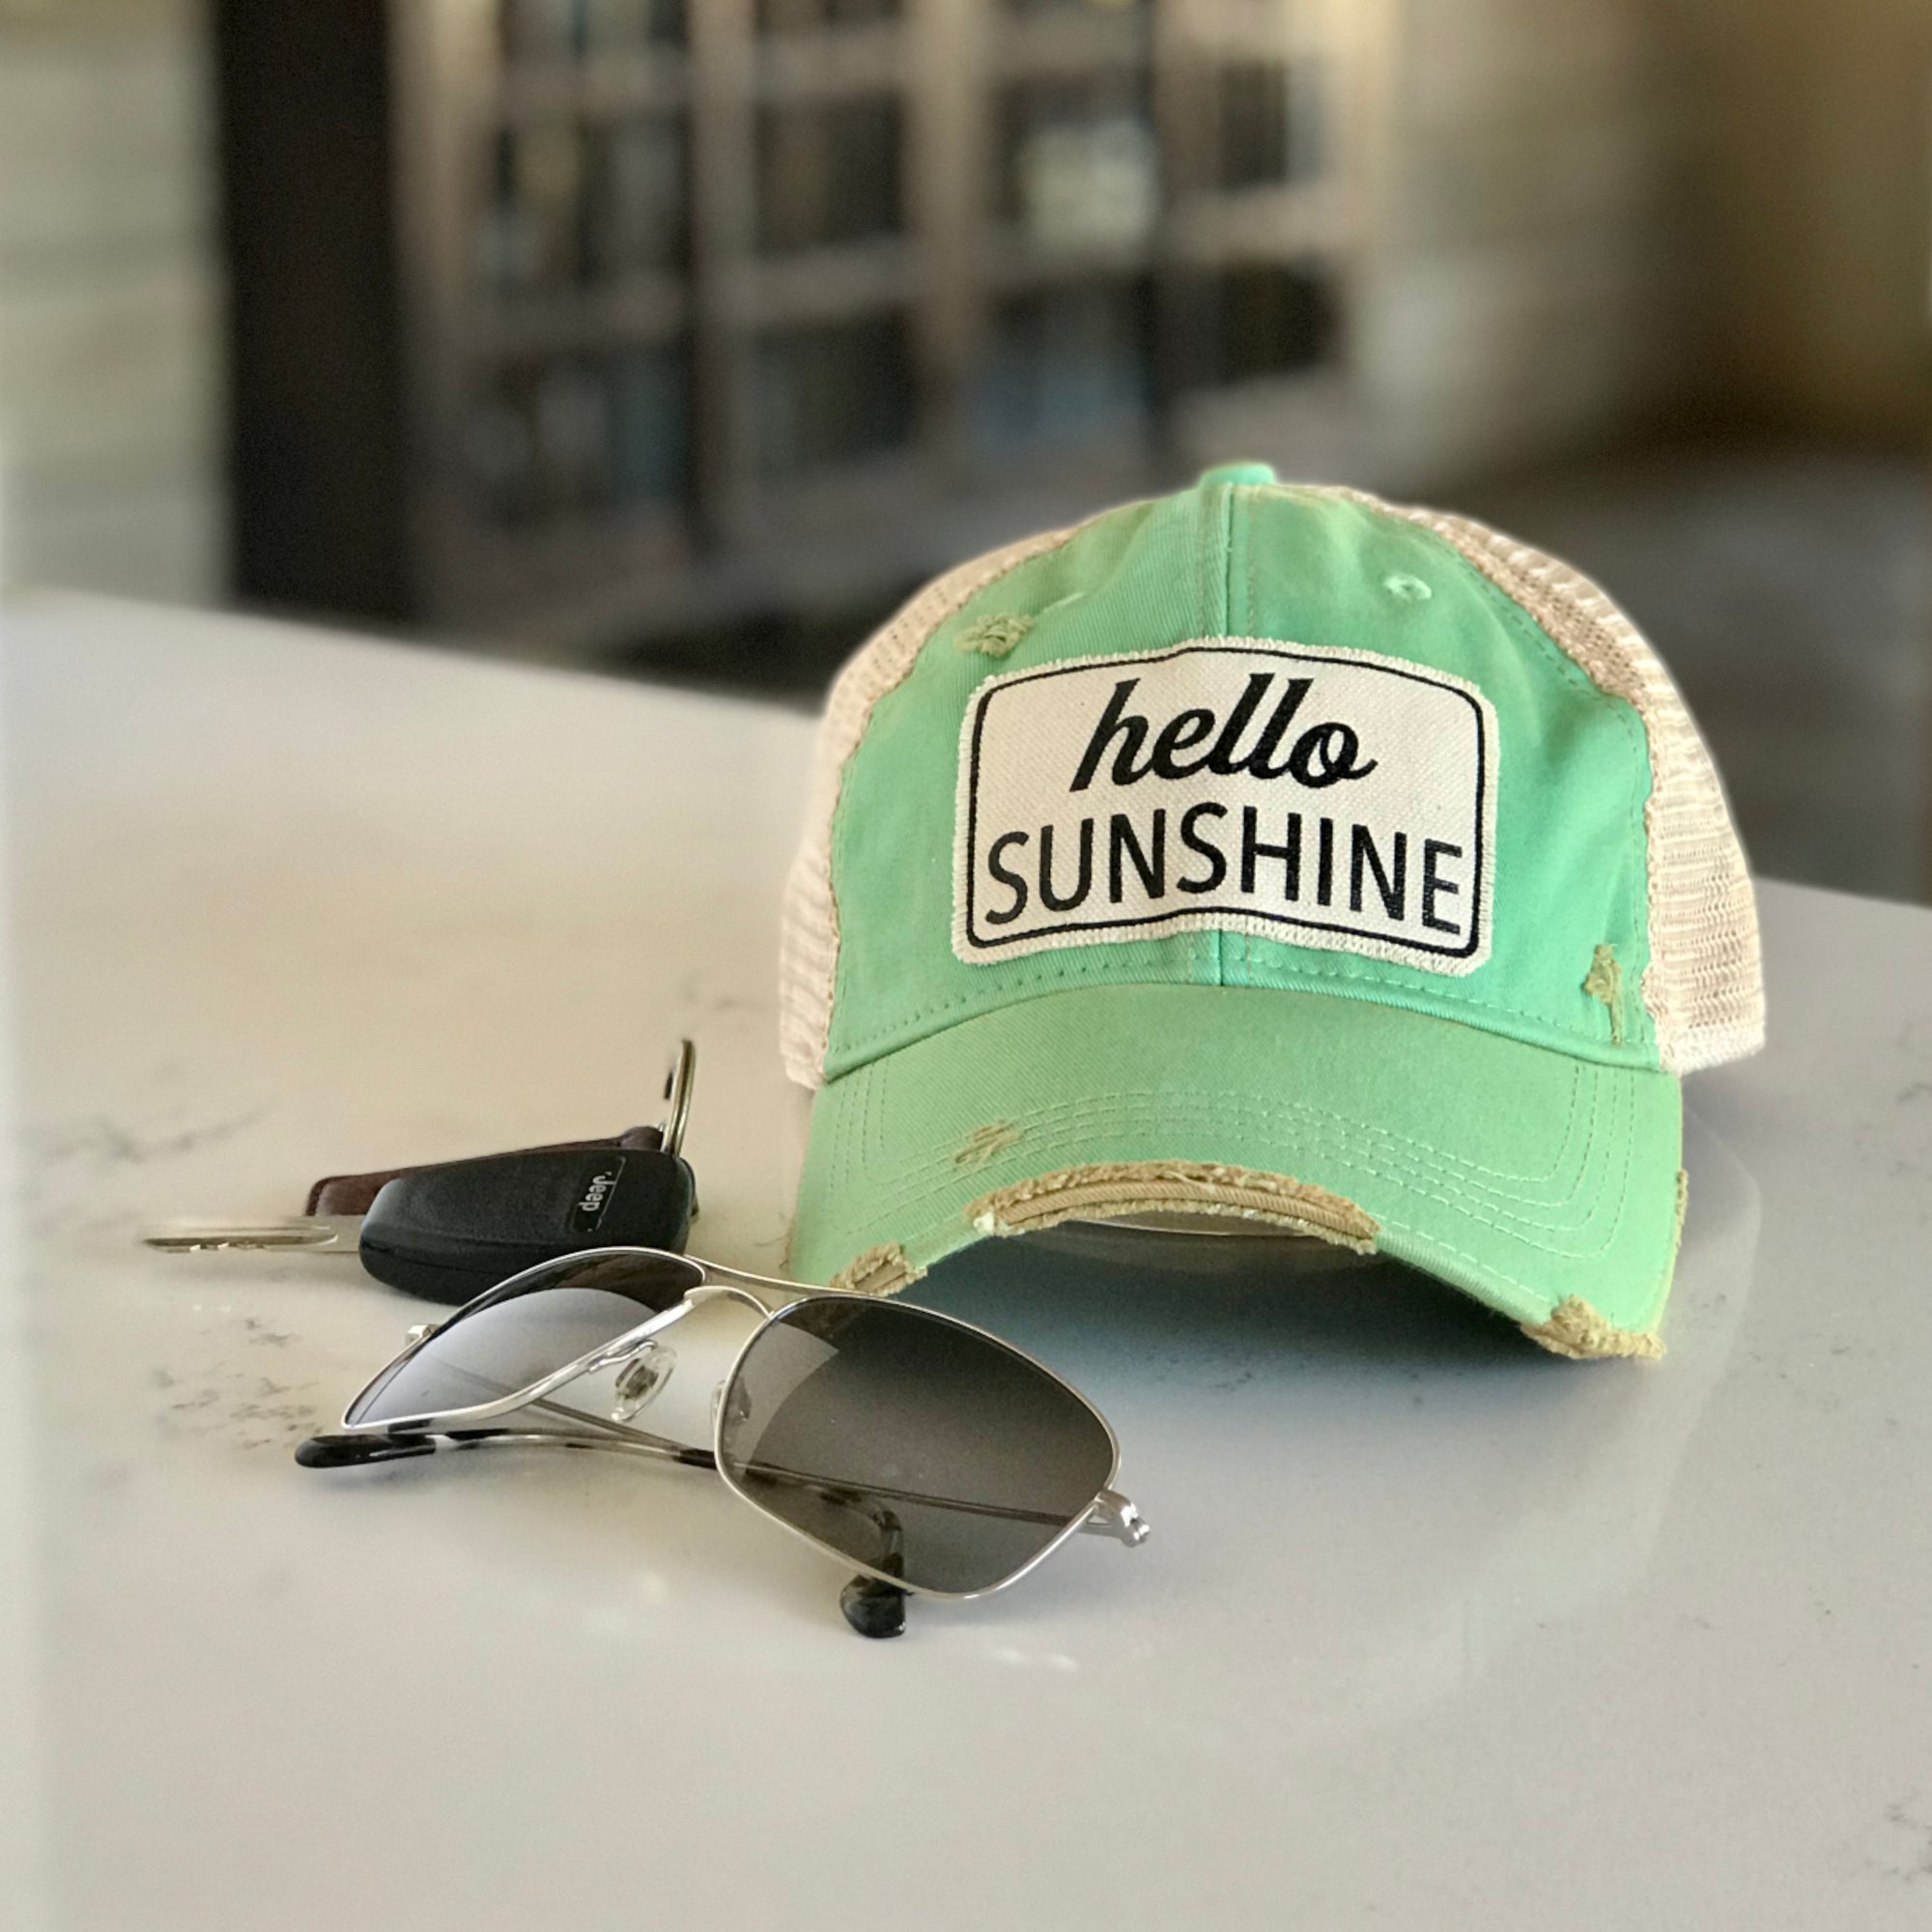 hello sunshine distressed trucker cap, hello sunshine vintage style trucker cap, hello sunshine distressed baseball cap, hello sunshine weather cap, hello sunshine baseball cap